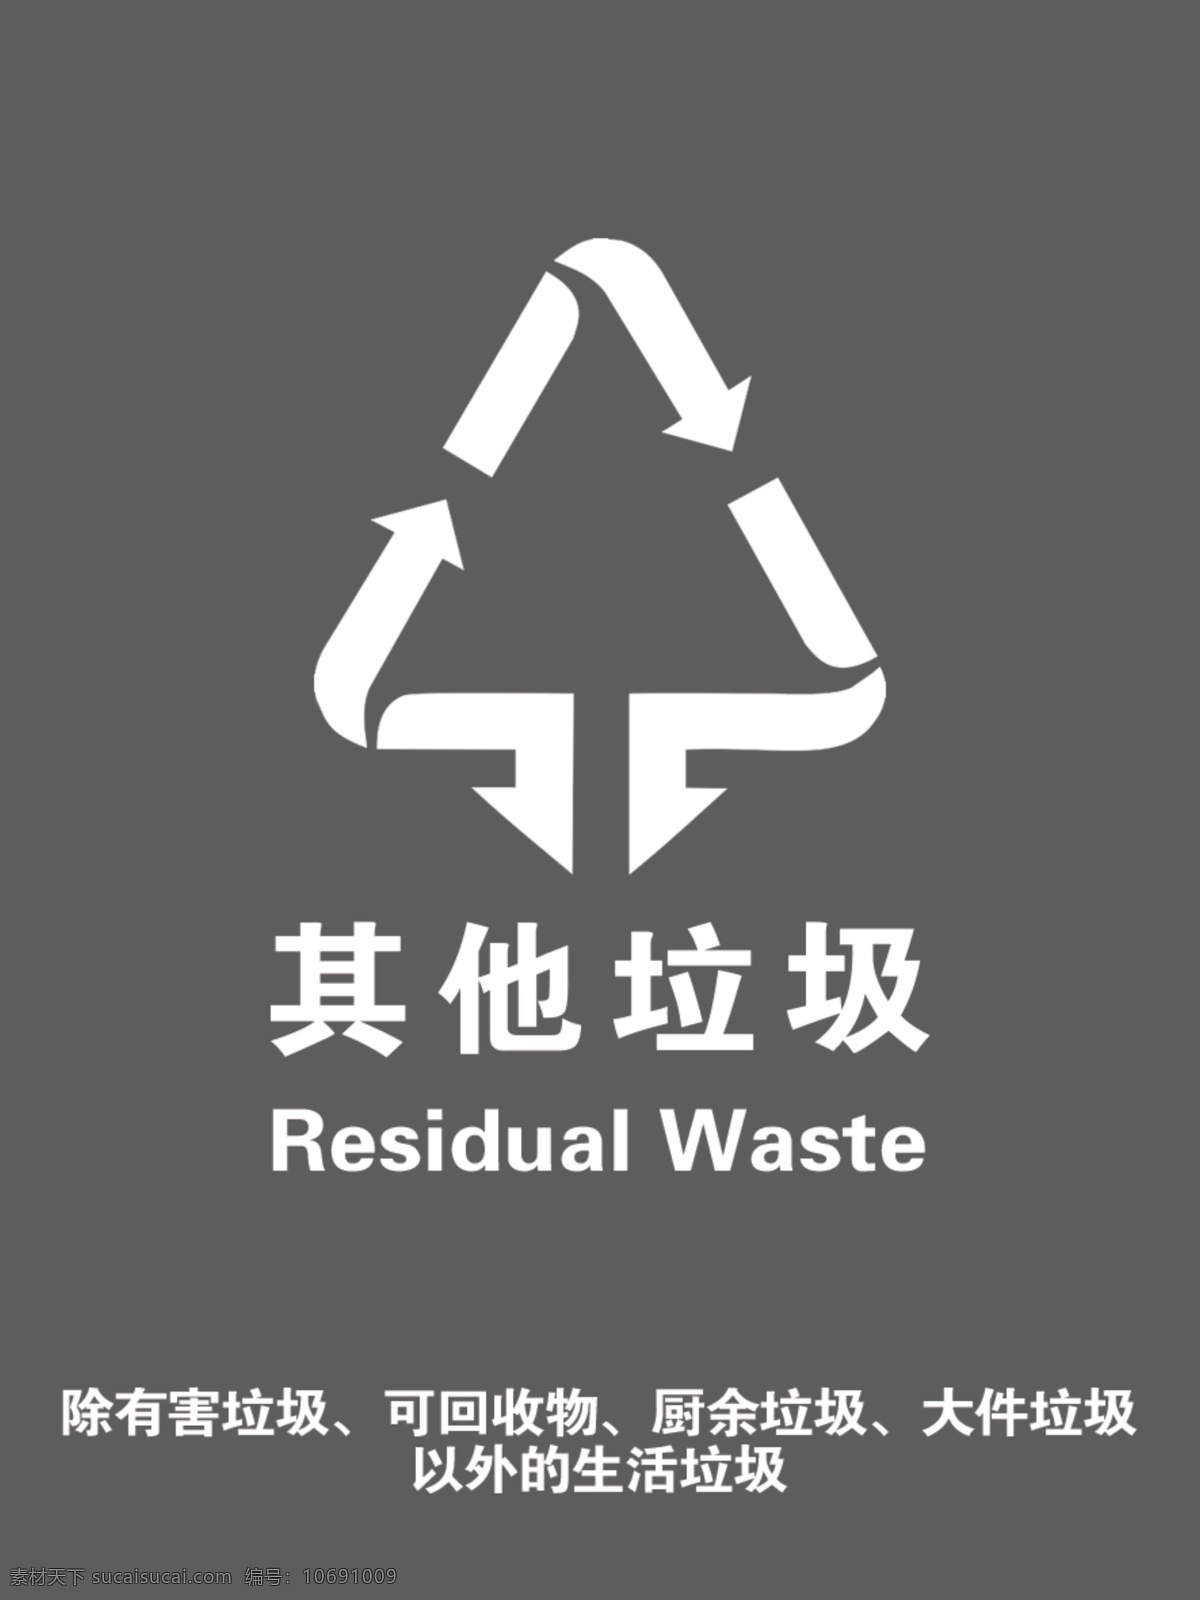 北京地区 标准版 垃圾 分类 标识 垃圾分类标识 国际 北京垃圾 图标 logo 公共标识 分层